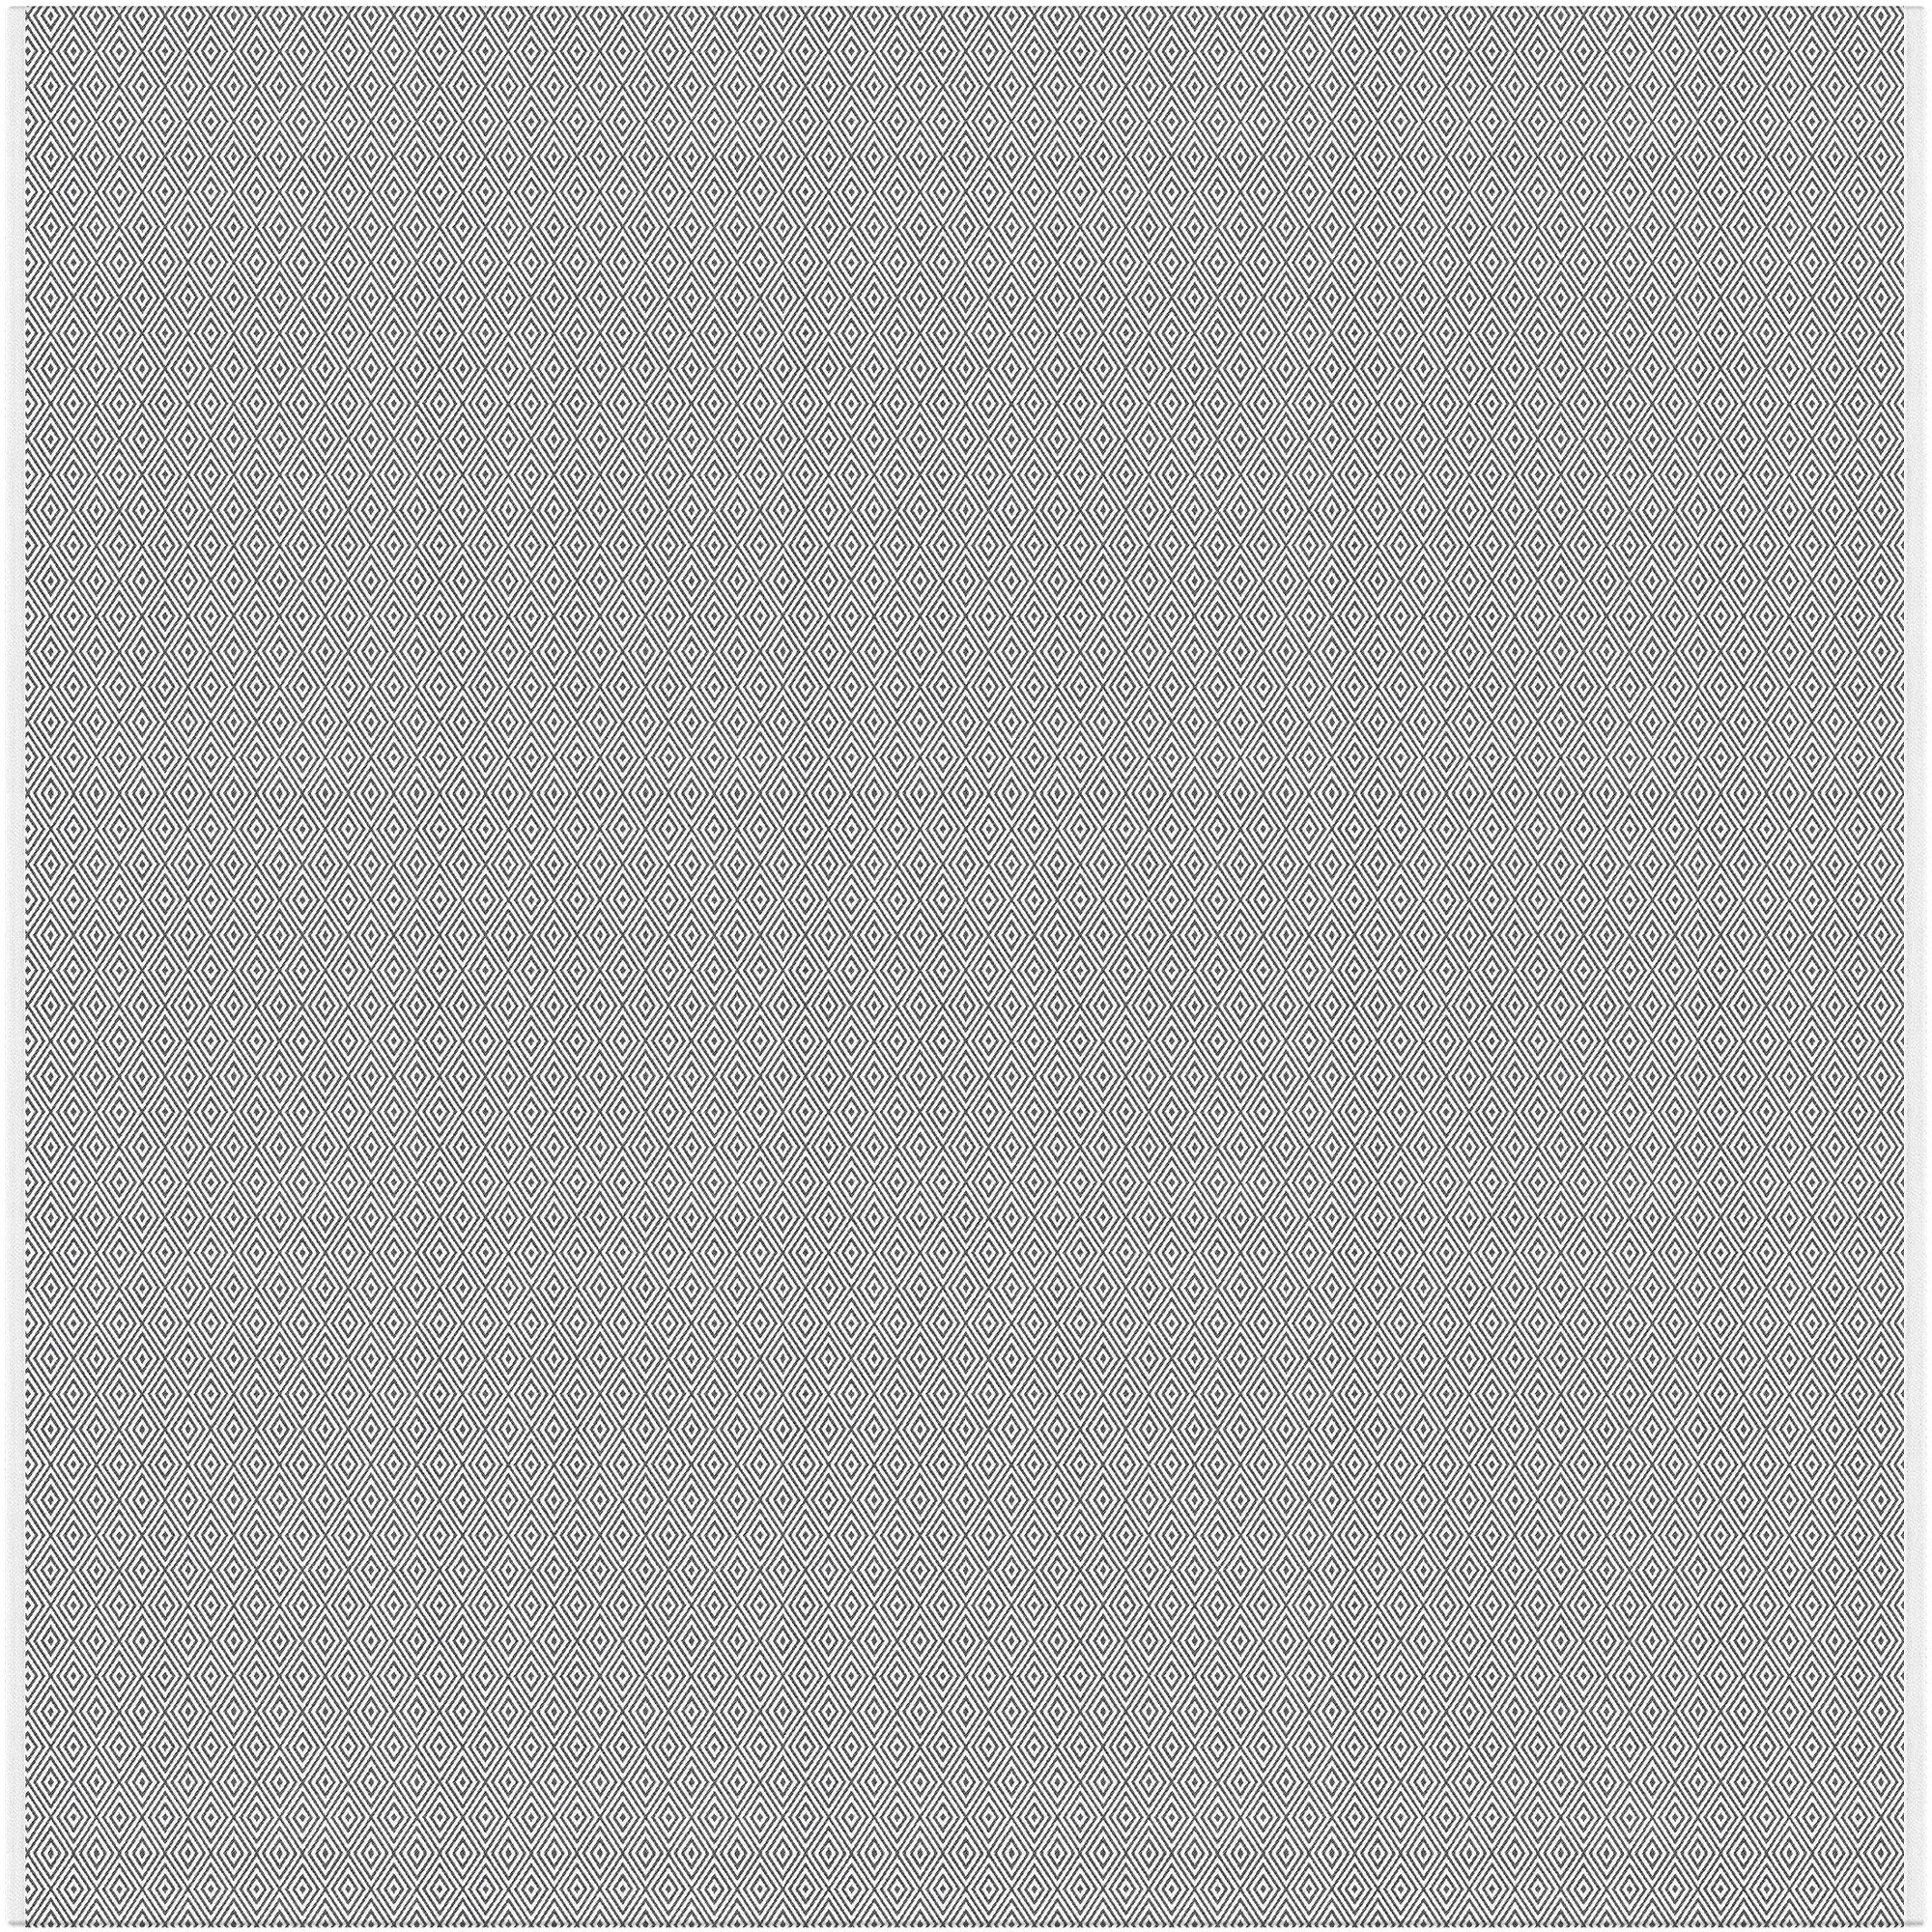 Ekelund Tischdecke Tischdecke Gåsöga 090 145x145 cm, Pixel gewebt (6-farbig)